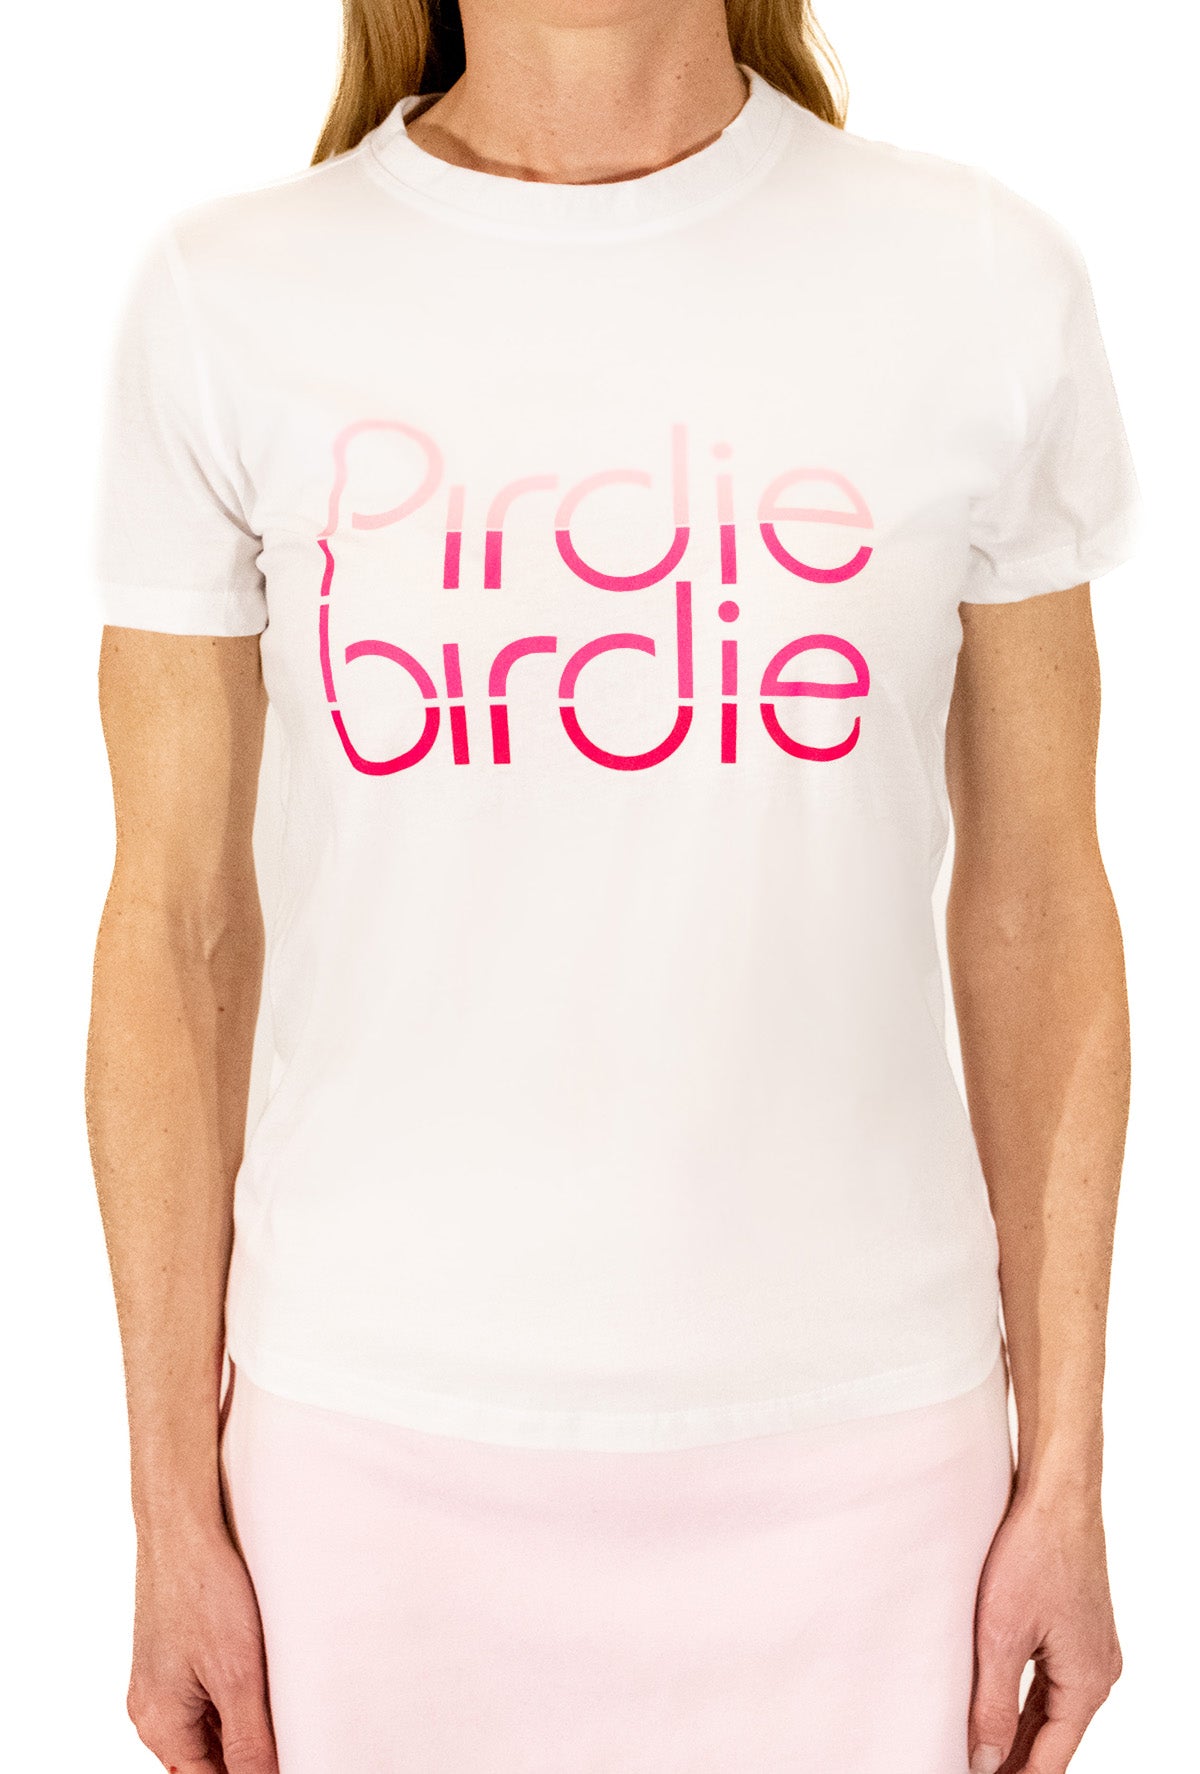 Pirdie Birdie Short Sleeve Tshirt